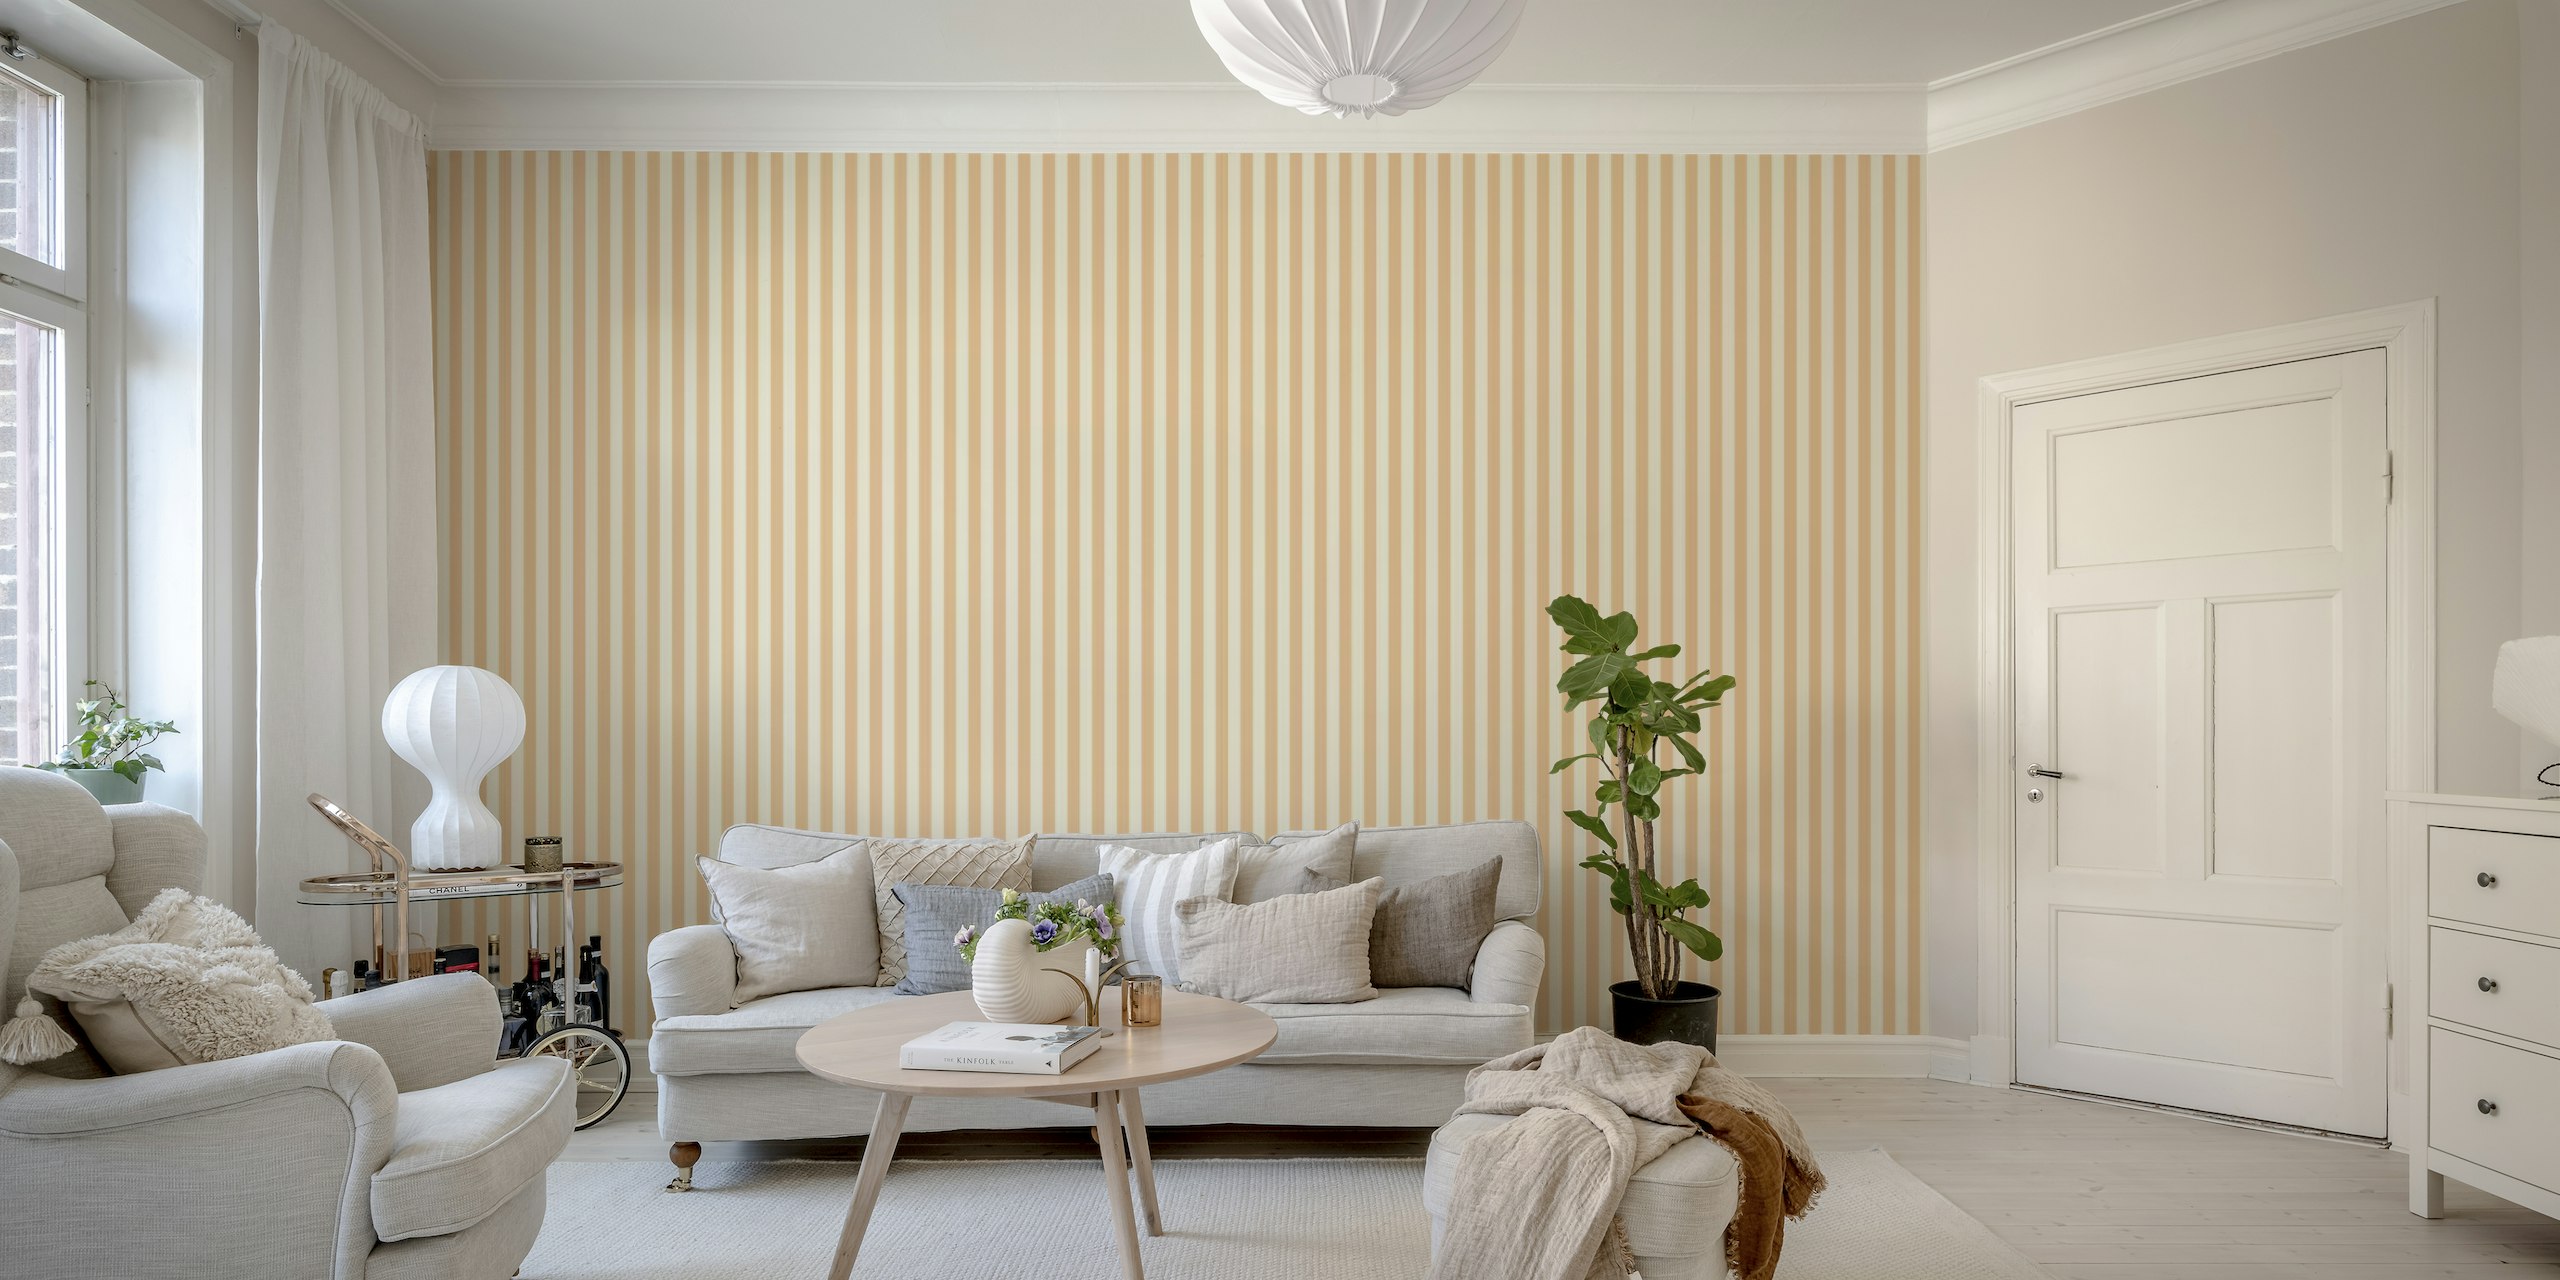 Stripes Normal Peach Fuzz - Mural de pared prístino con suaves tonos melocotón y diseño minimalista